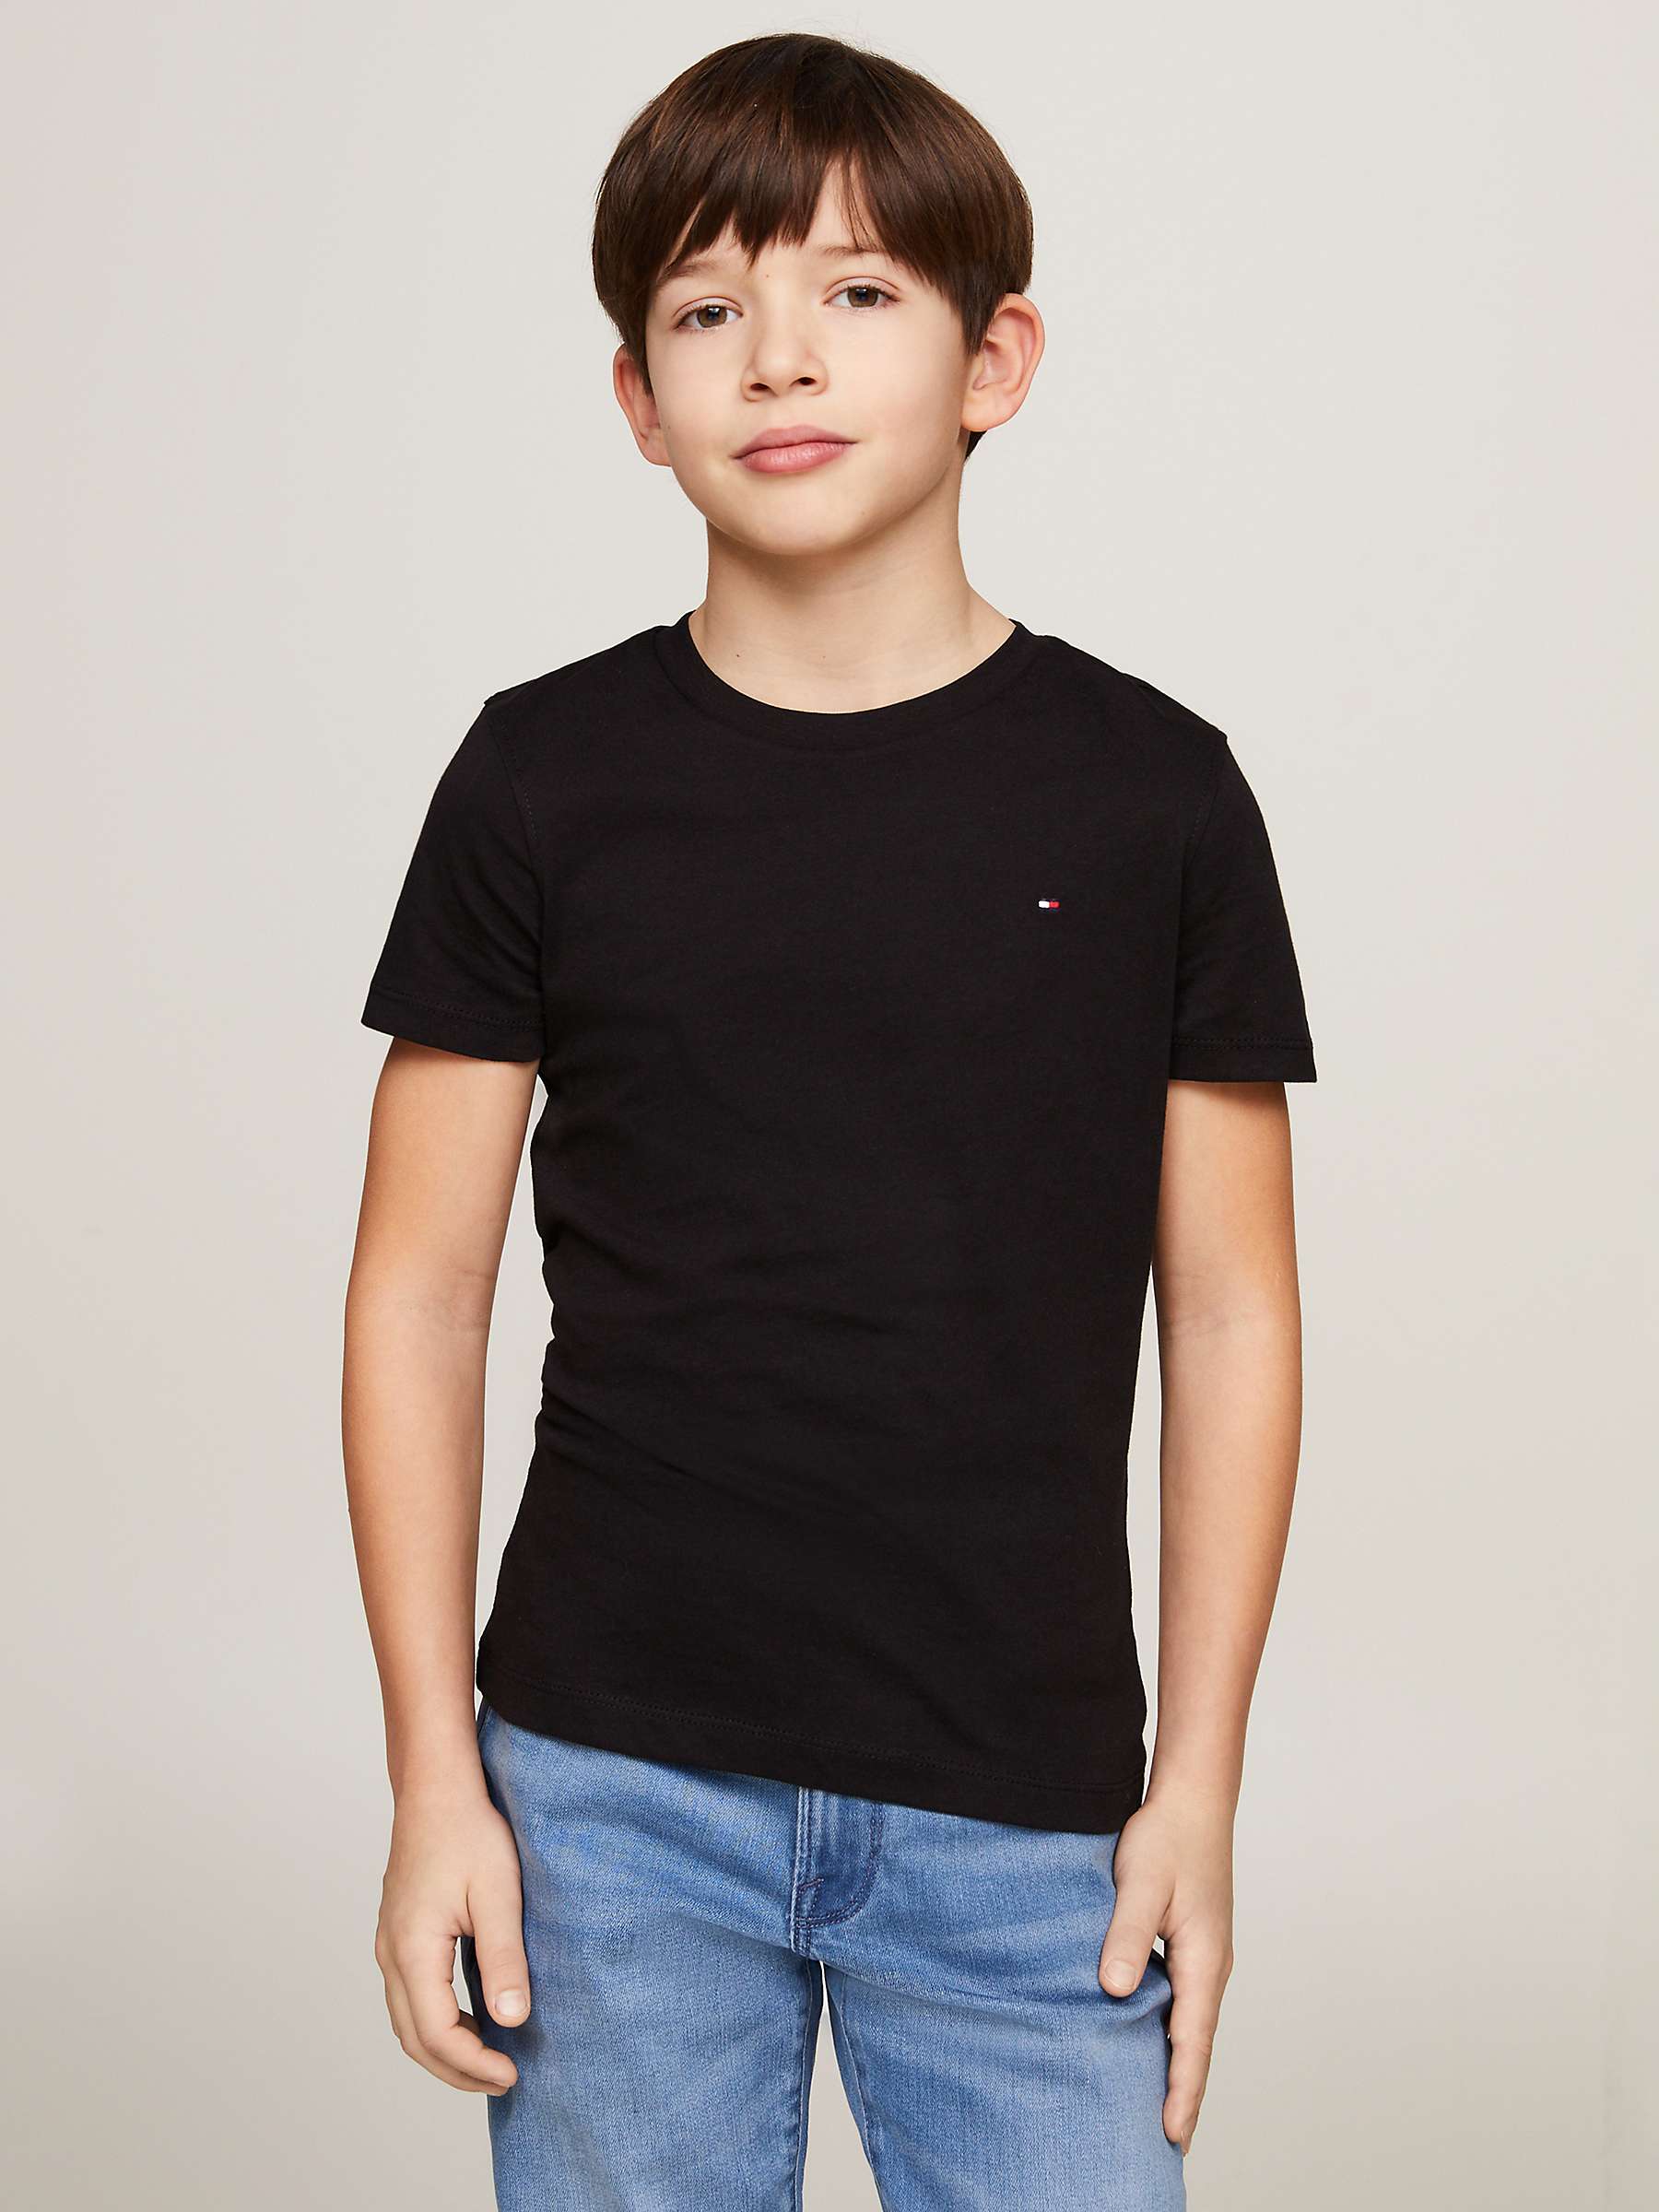 Buy Tommy Hilfiger Kids' Basic Crew Neck Short Sleeve Top Online at johnlewis.com